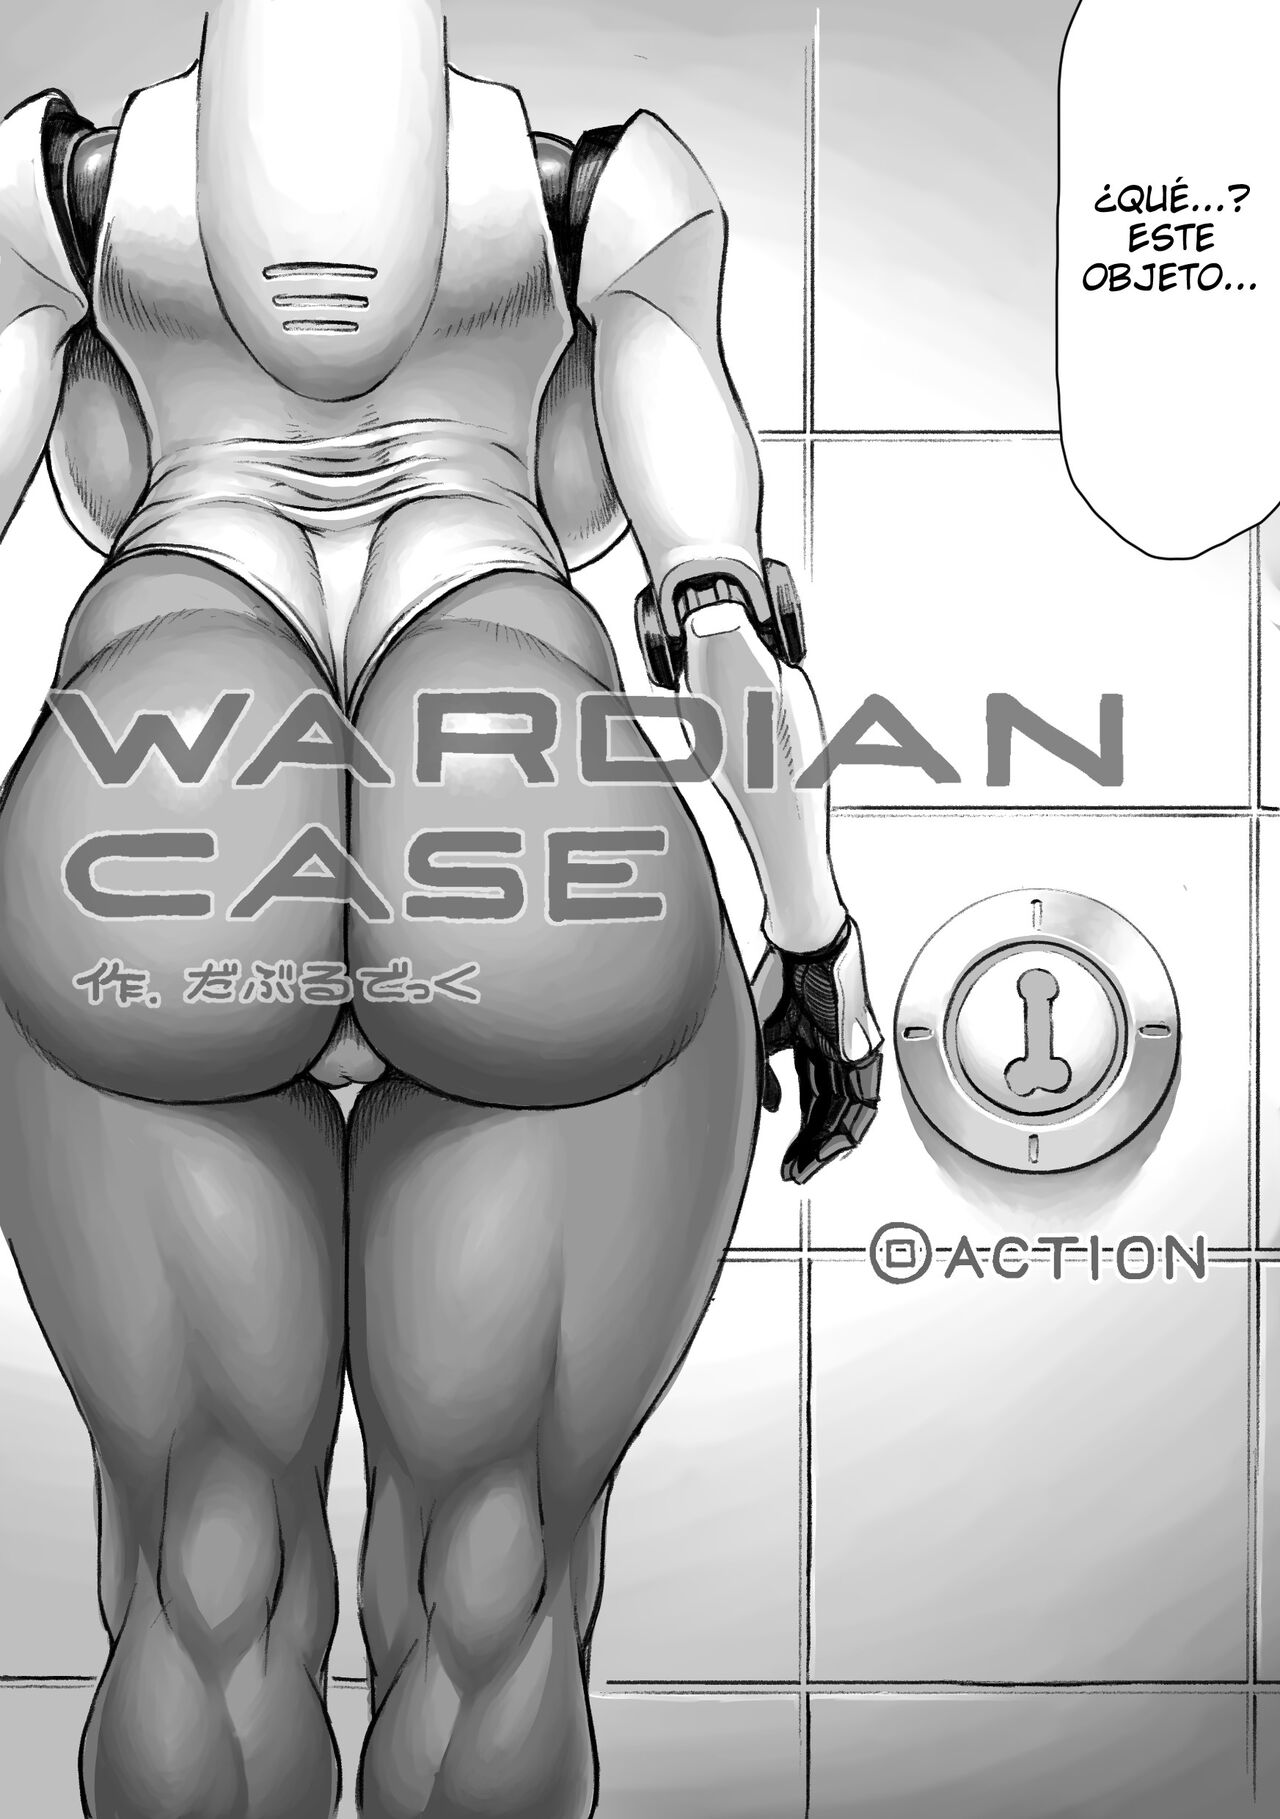 WARDIAN case